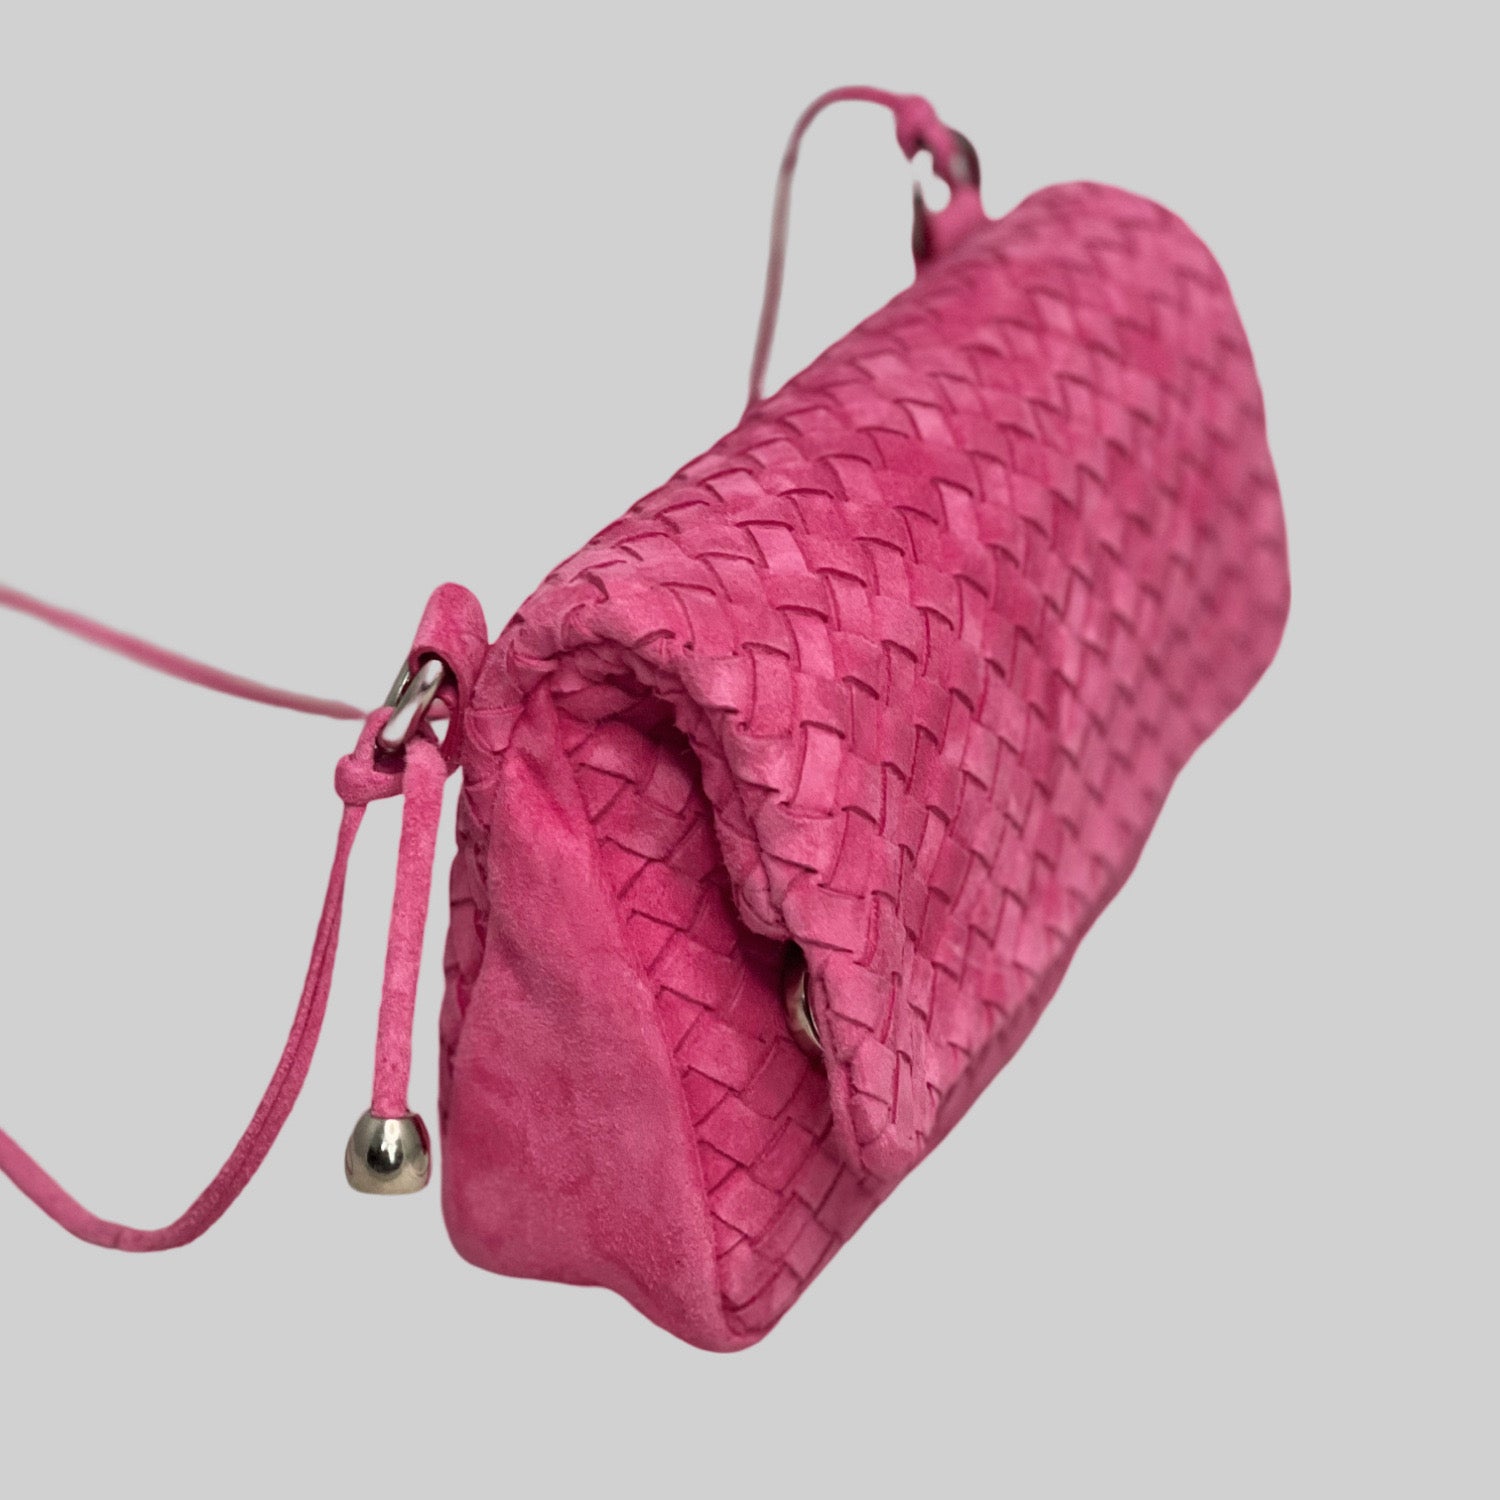  Ribichini Undercover i rosa: Smart, allsidig semsket skinnveske. Kan brettes kompakt, sikker lukking med magneter. Sidevisning viser lukkemekanismen.